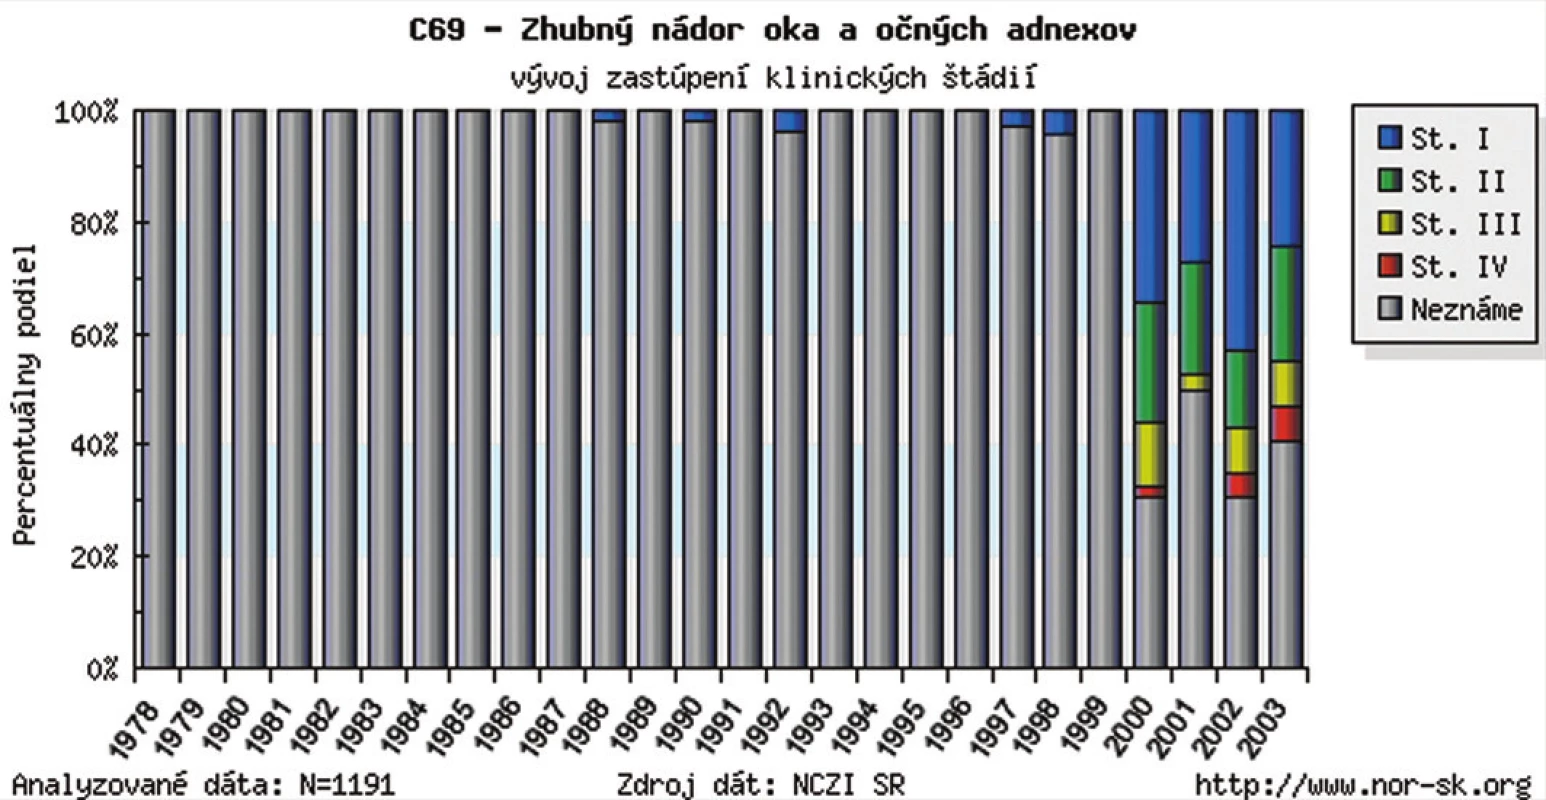 Zhubný nádor oka a očných adnexov v SR – vývoj zastúpenia klinických štádií v r. 1978–2003